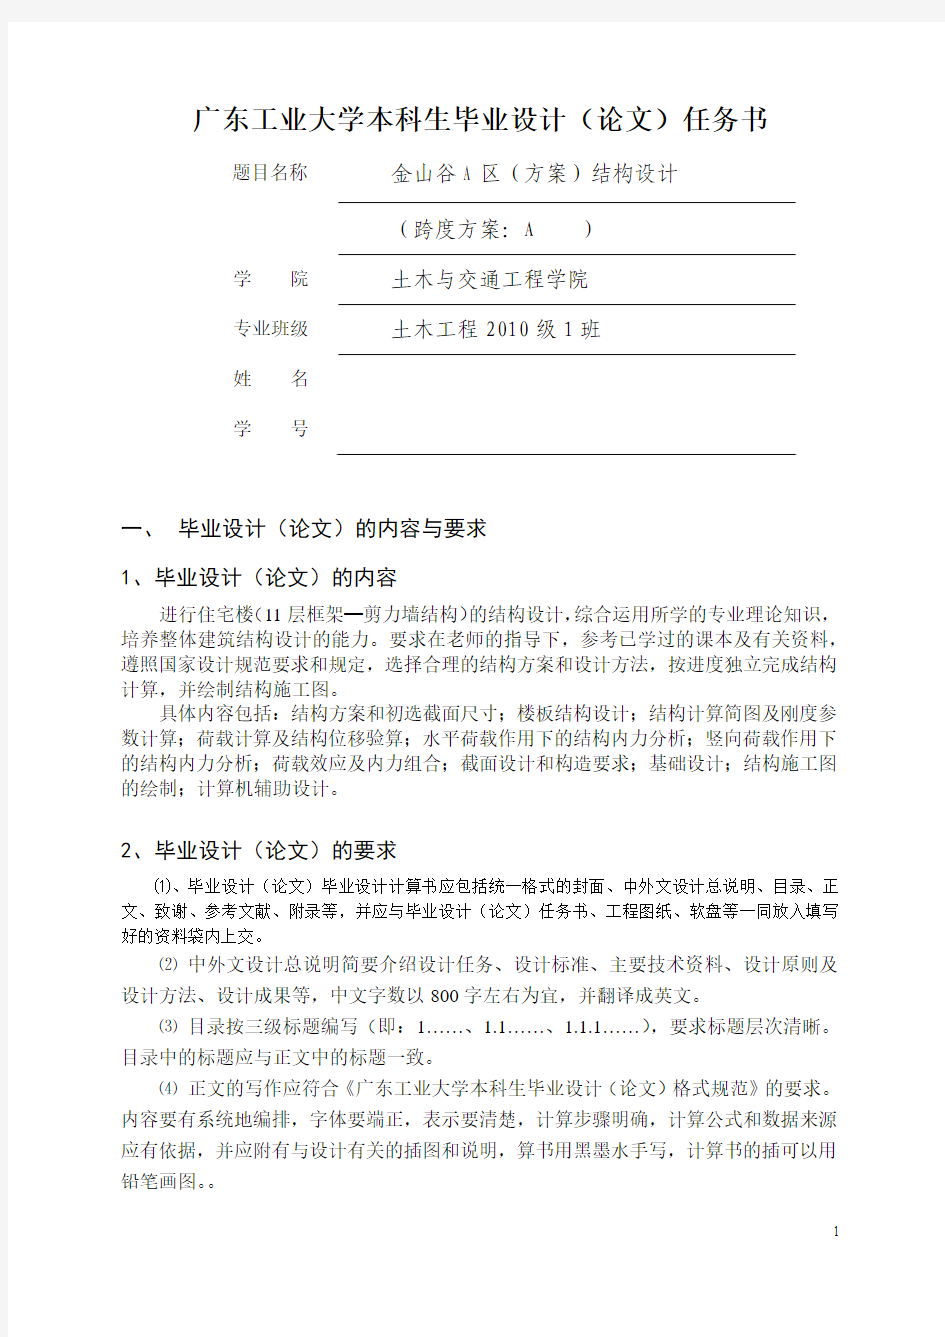 广东工业大学土木工程毕业设计任务书